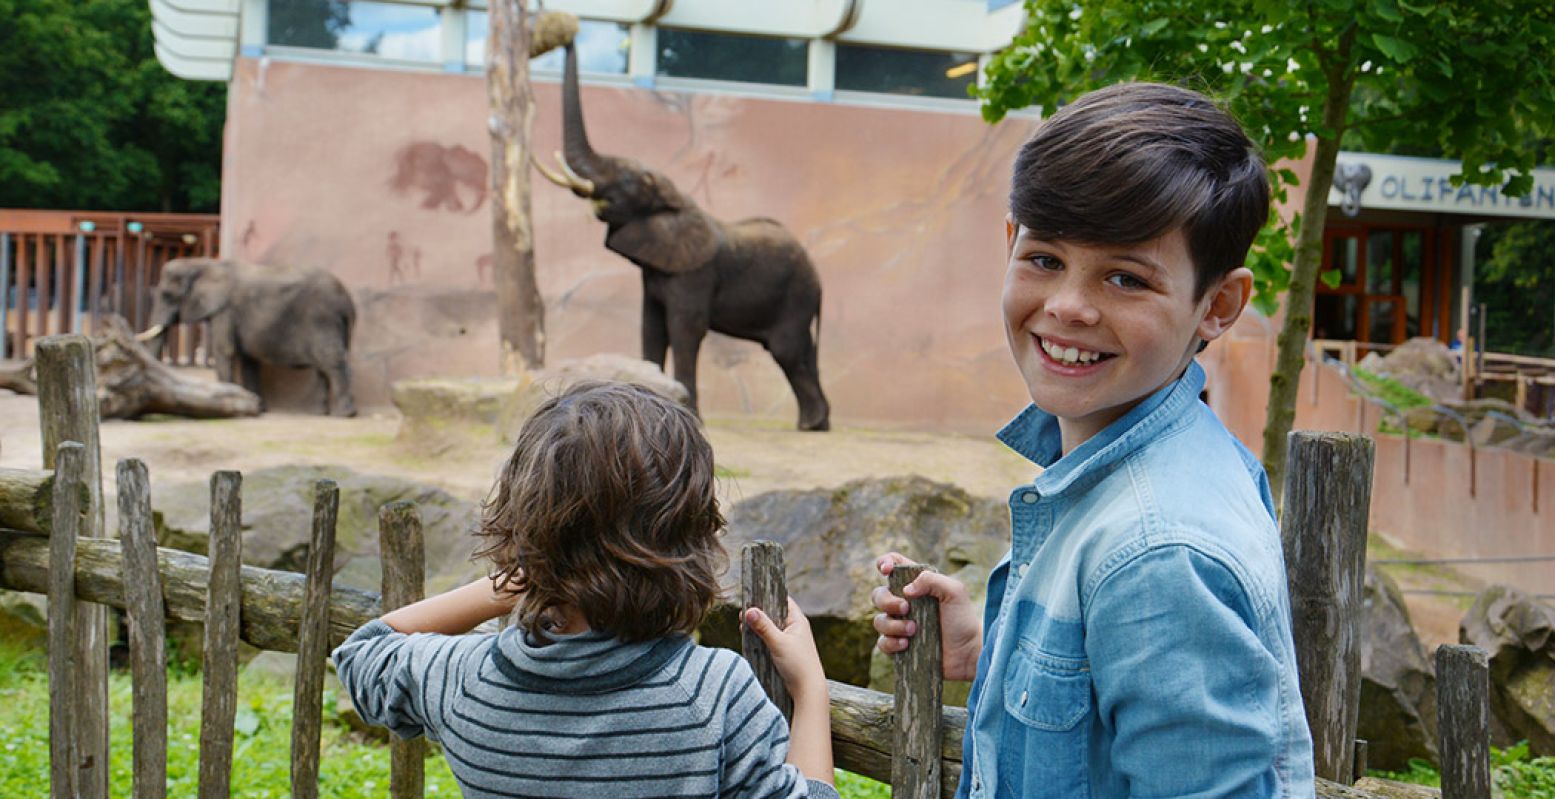 Weer op bezoek bij de dieren in de dierentuinen! Even kijken hoe het gaat met vrouwtjesolifant Duna in Ouwehands Dierenpark, die een baby verwacht. Foto: Ouwehands Dierenpark